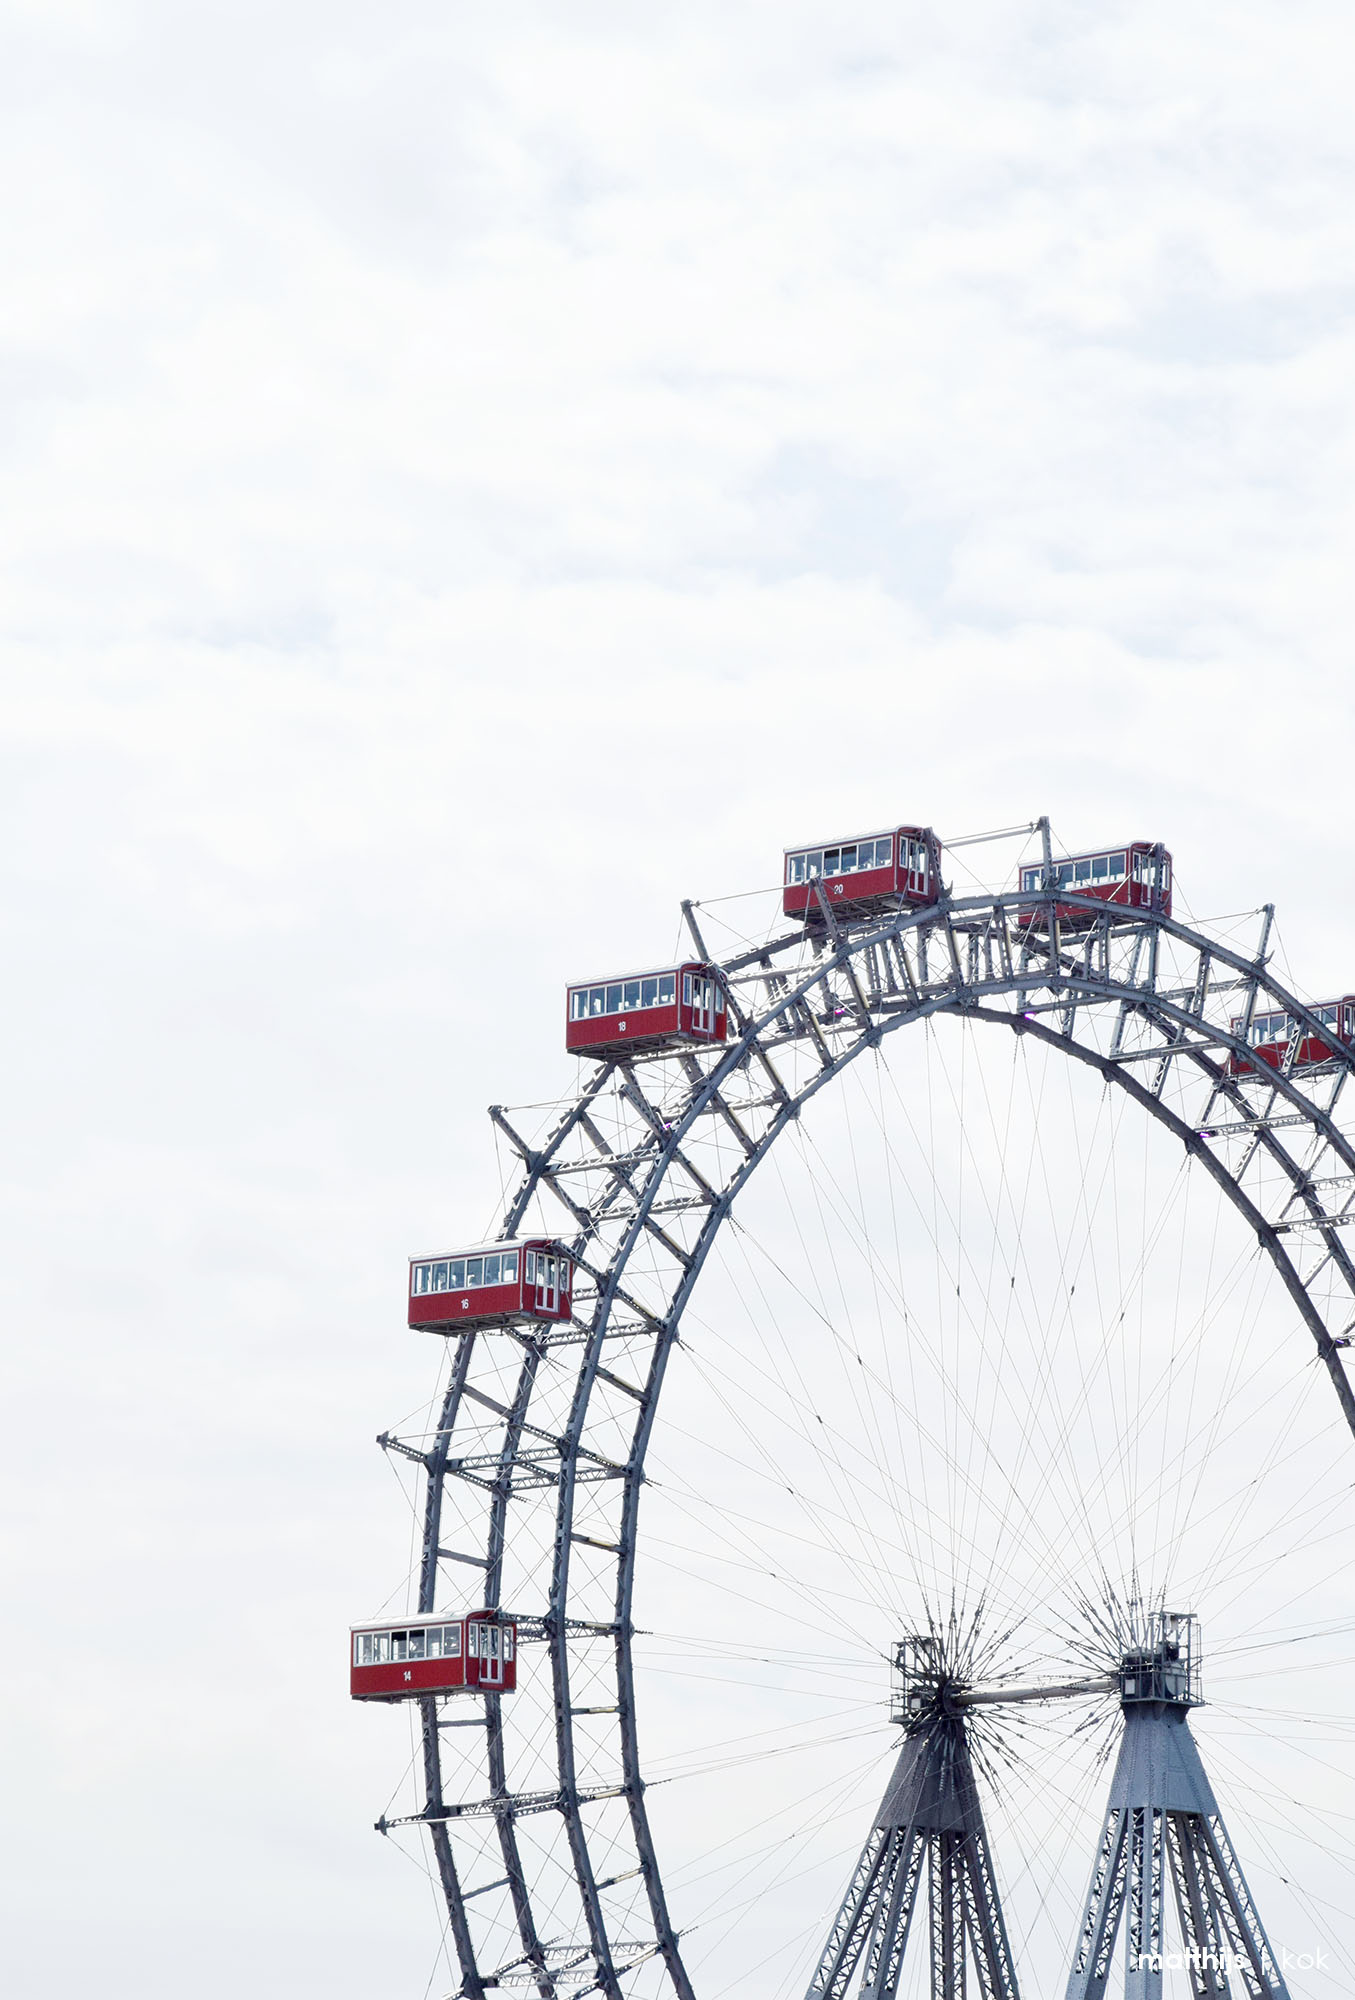 Wiener Riesenrad - Giant Ferris Wheel, Vienna, Austria | Photo by Matthijs Kok